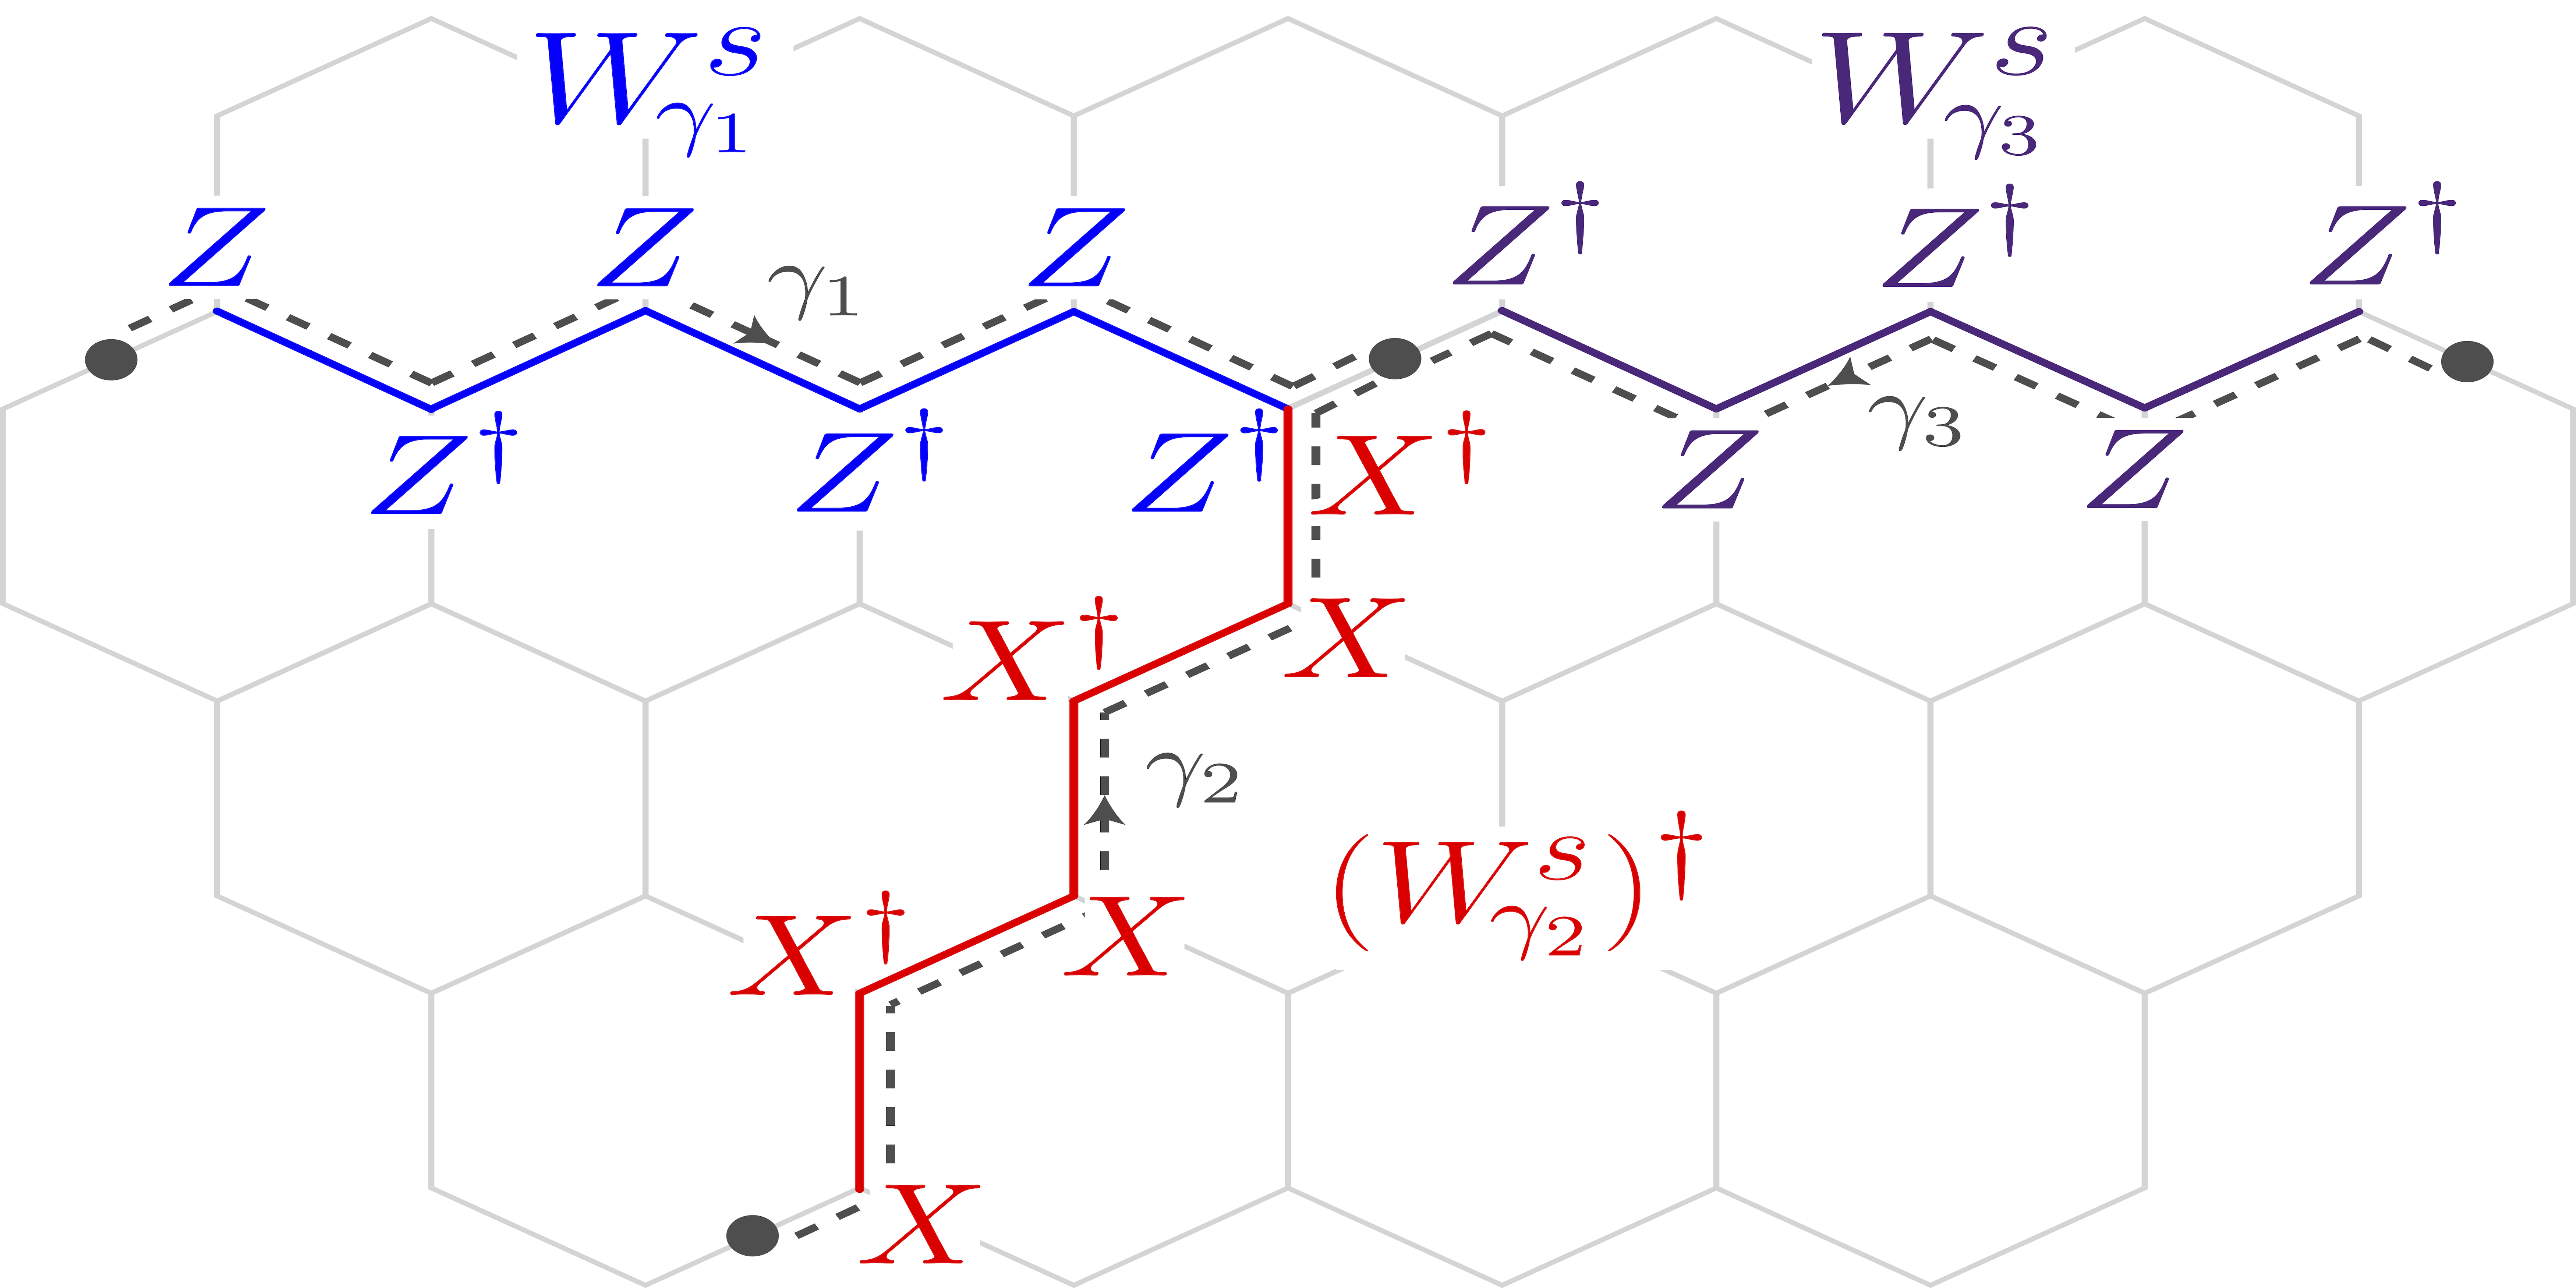 Códigos del subsistema topológico de Pauli de las teorías abelianas de anyon